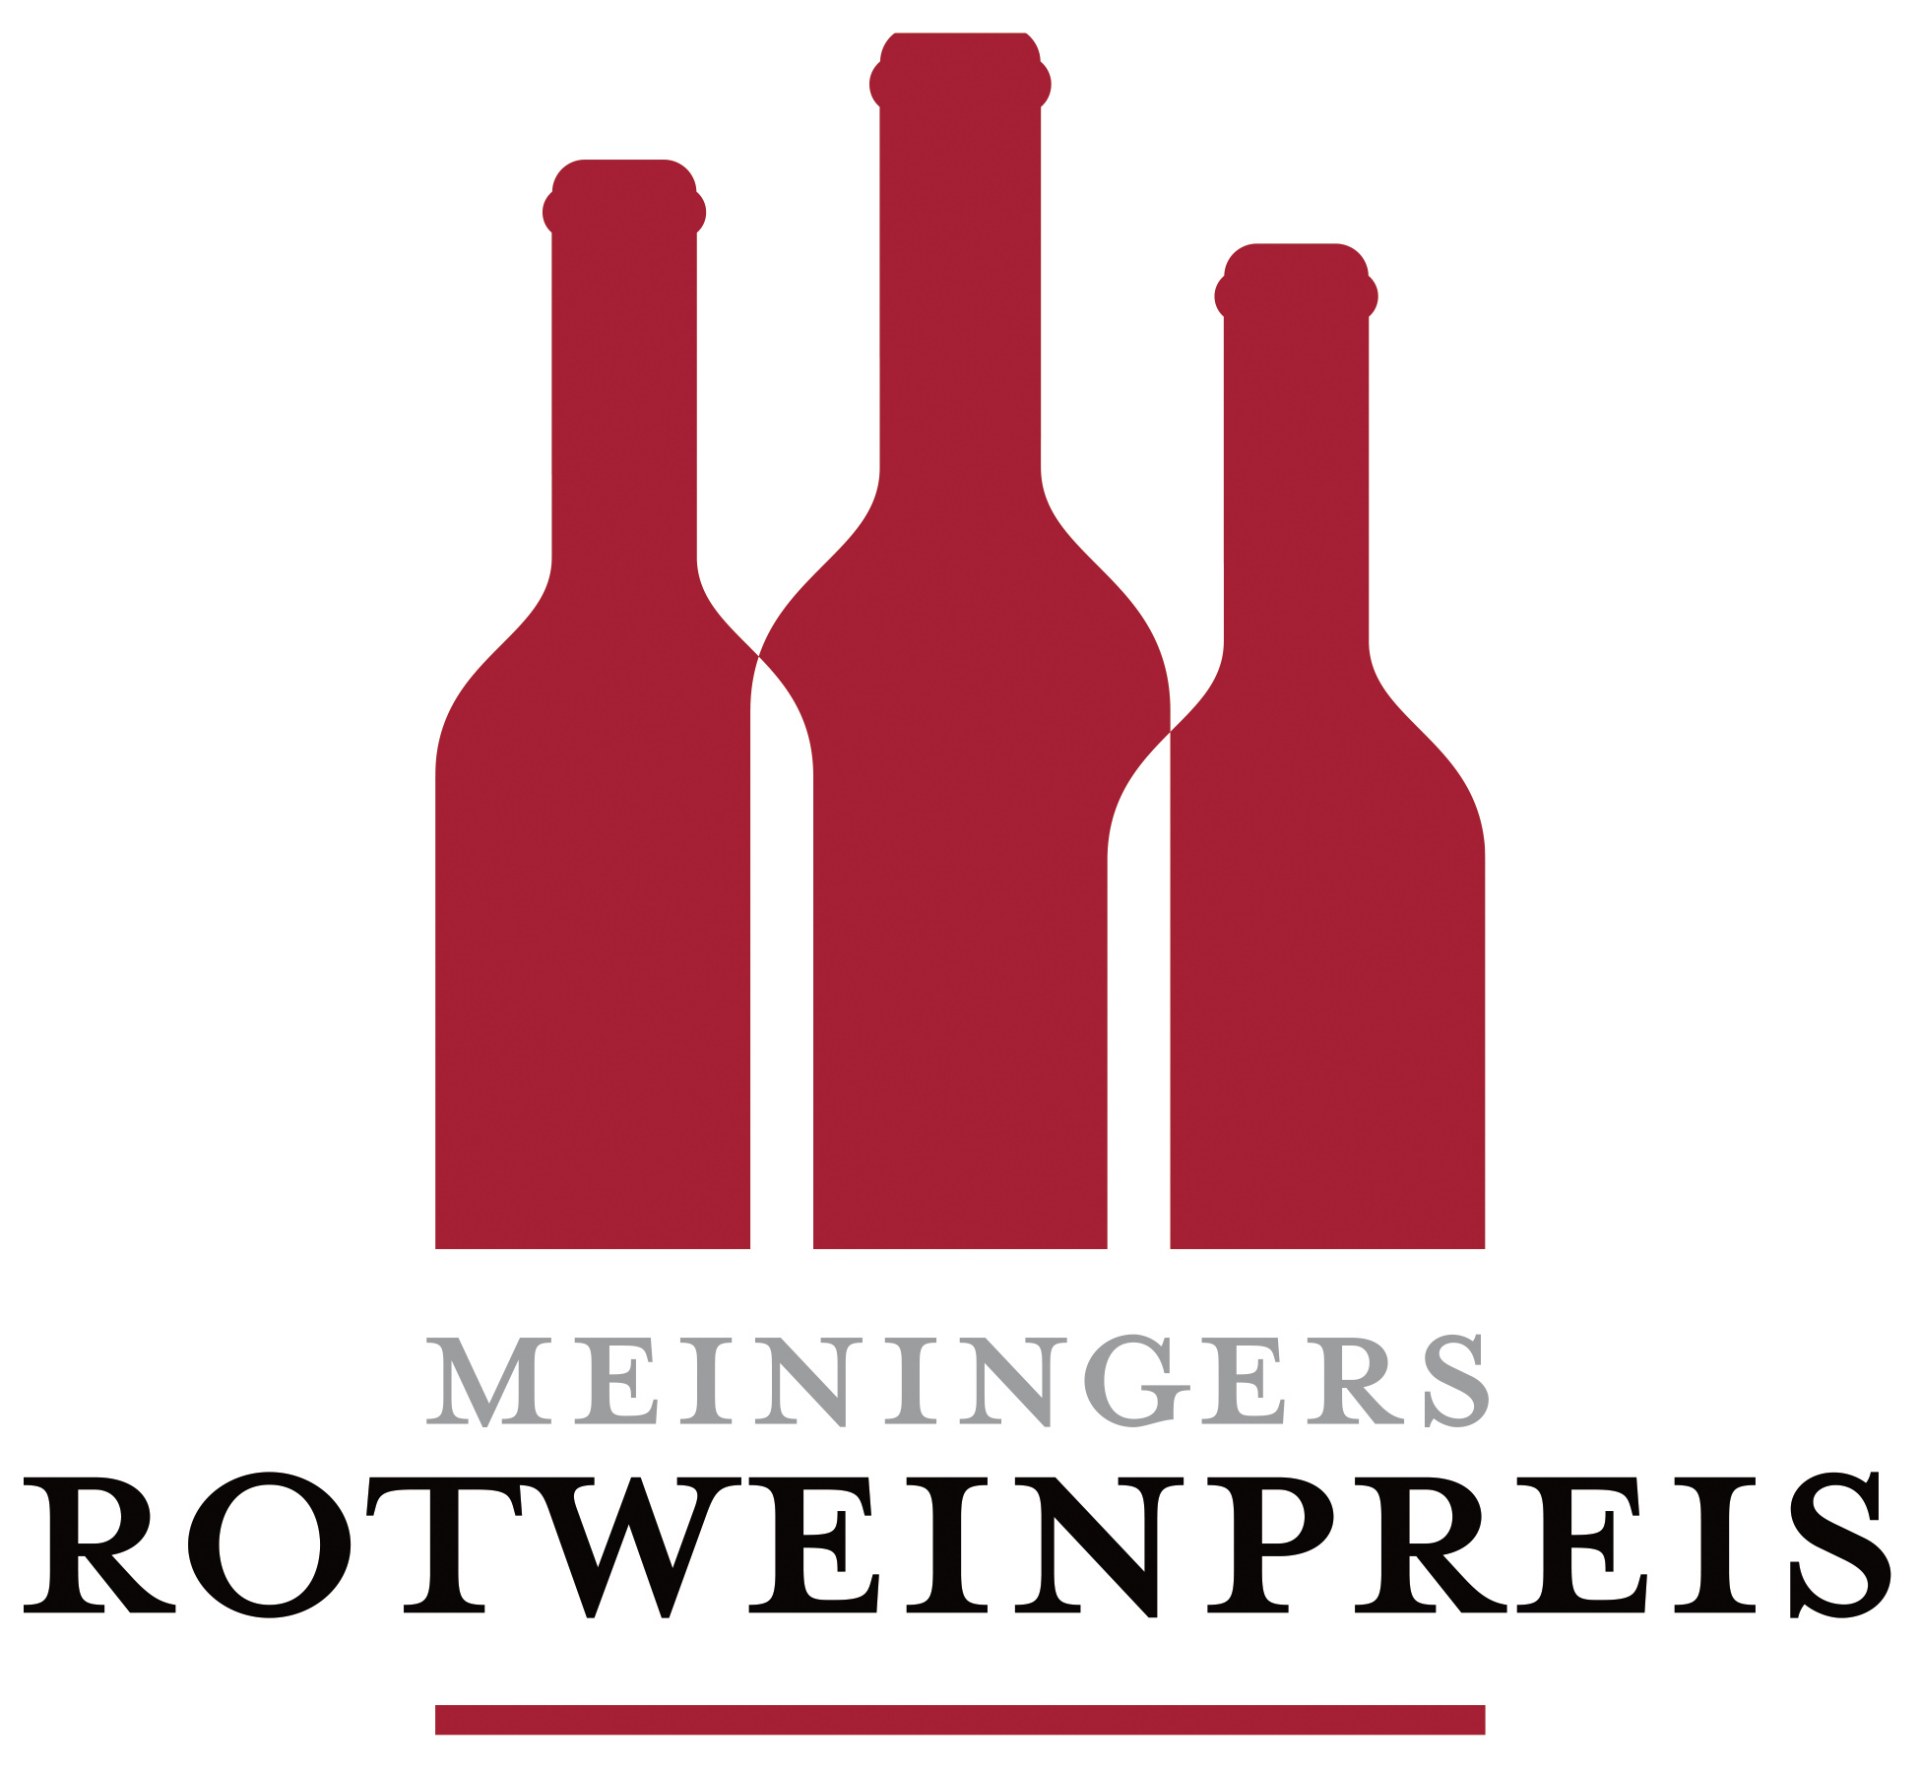 Bild-Auszeichnung: 1. Platz beim Meininger Rotweinpreis in der Kategorie Sortenvielfalt